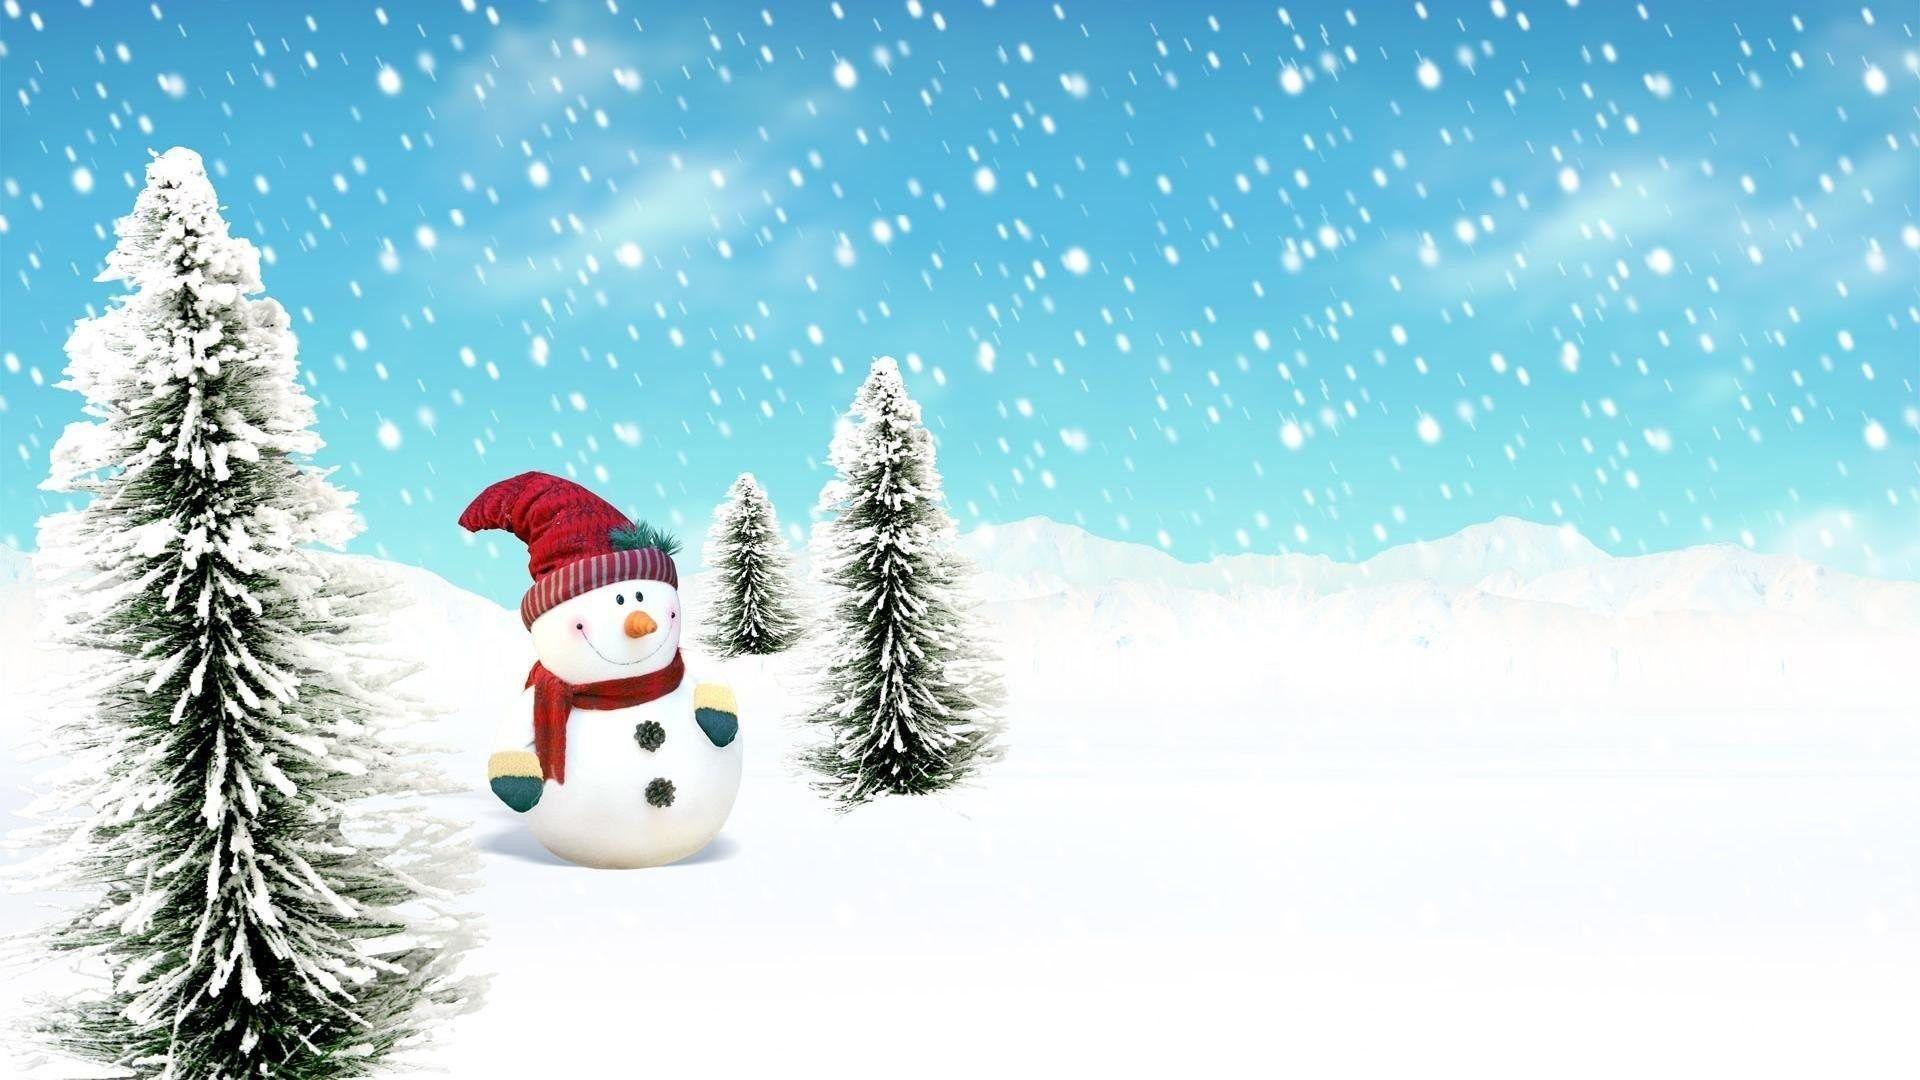 Frosty the Snowman xanistheman mollywhuppiemusic lovelylittlemel   TikTok